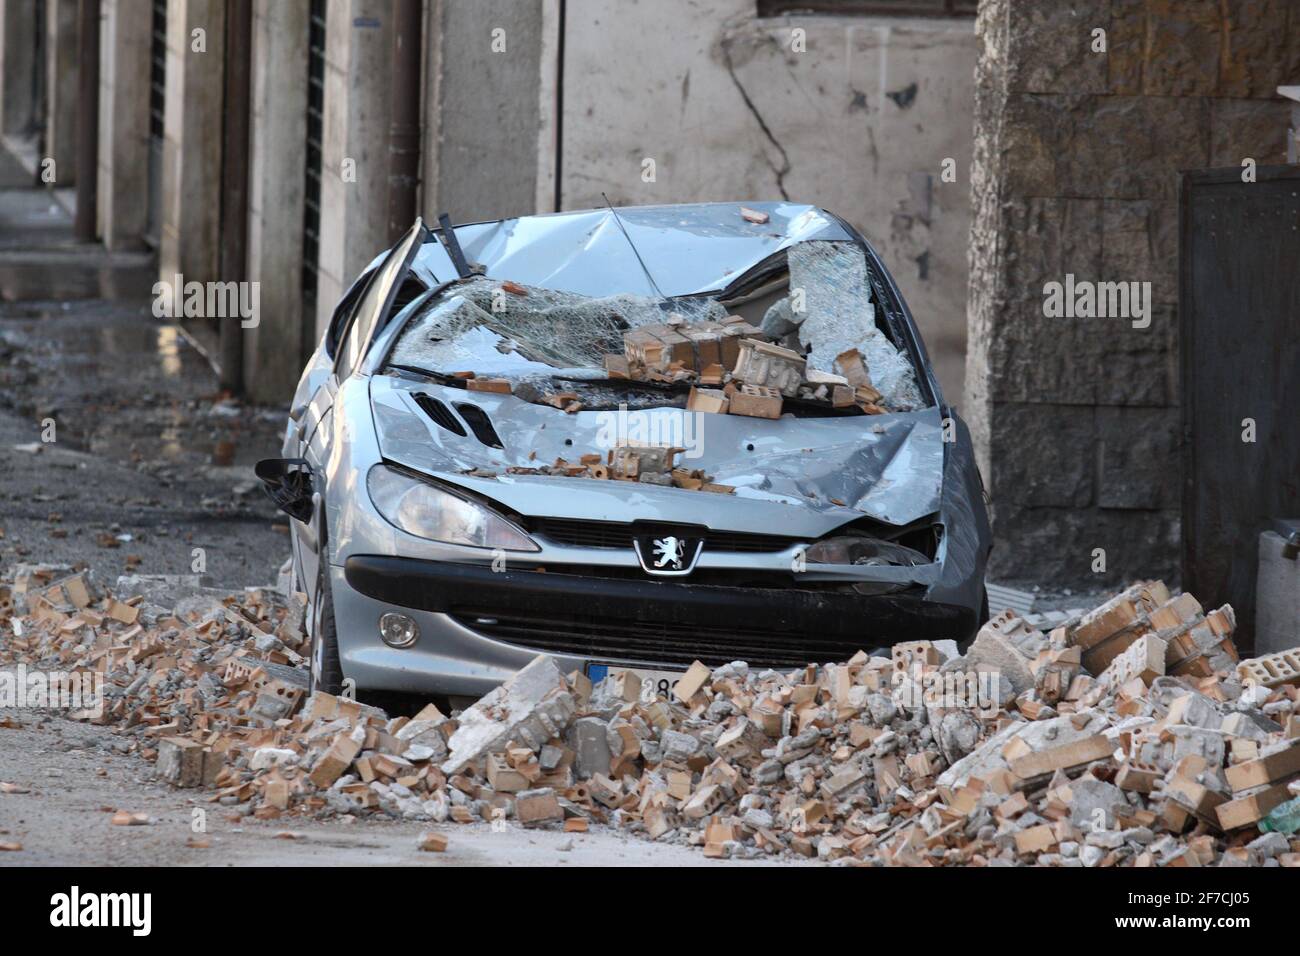 L'Aquila, Italia - 6 aprile 2009: La città distrutta dal terremoto Foto Stock